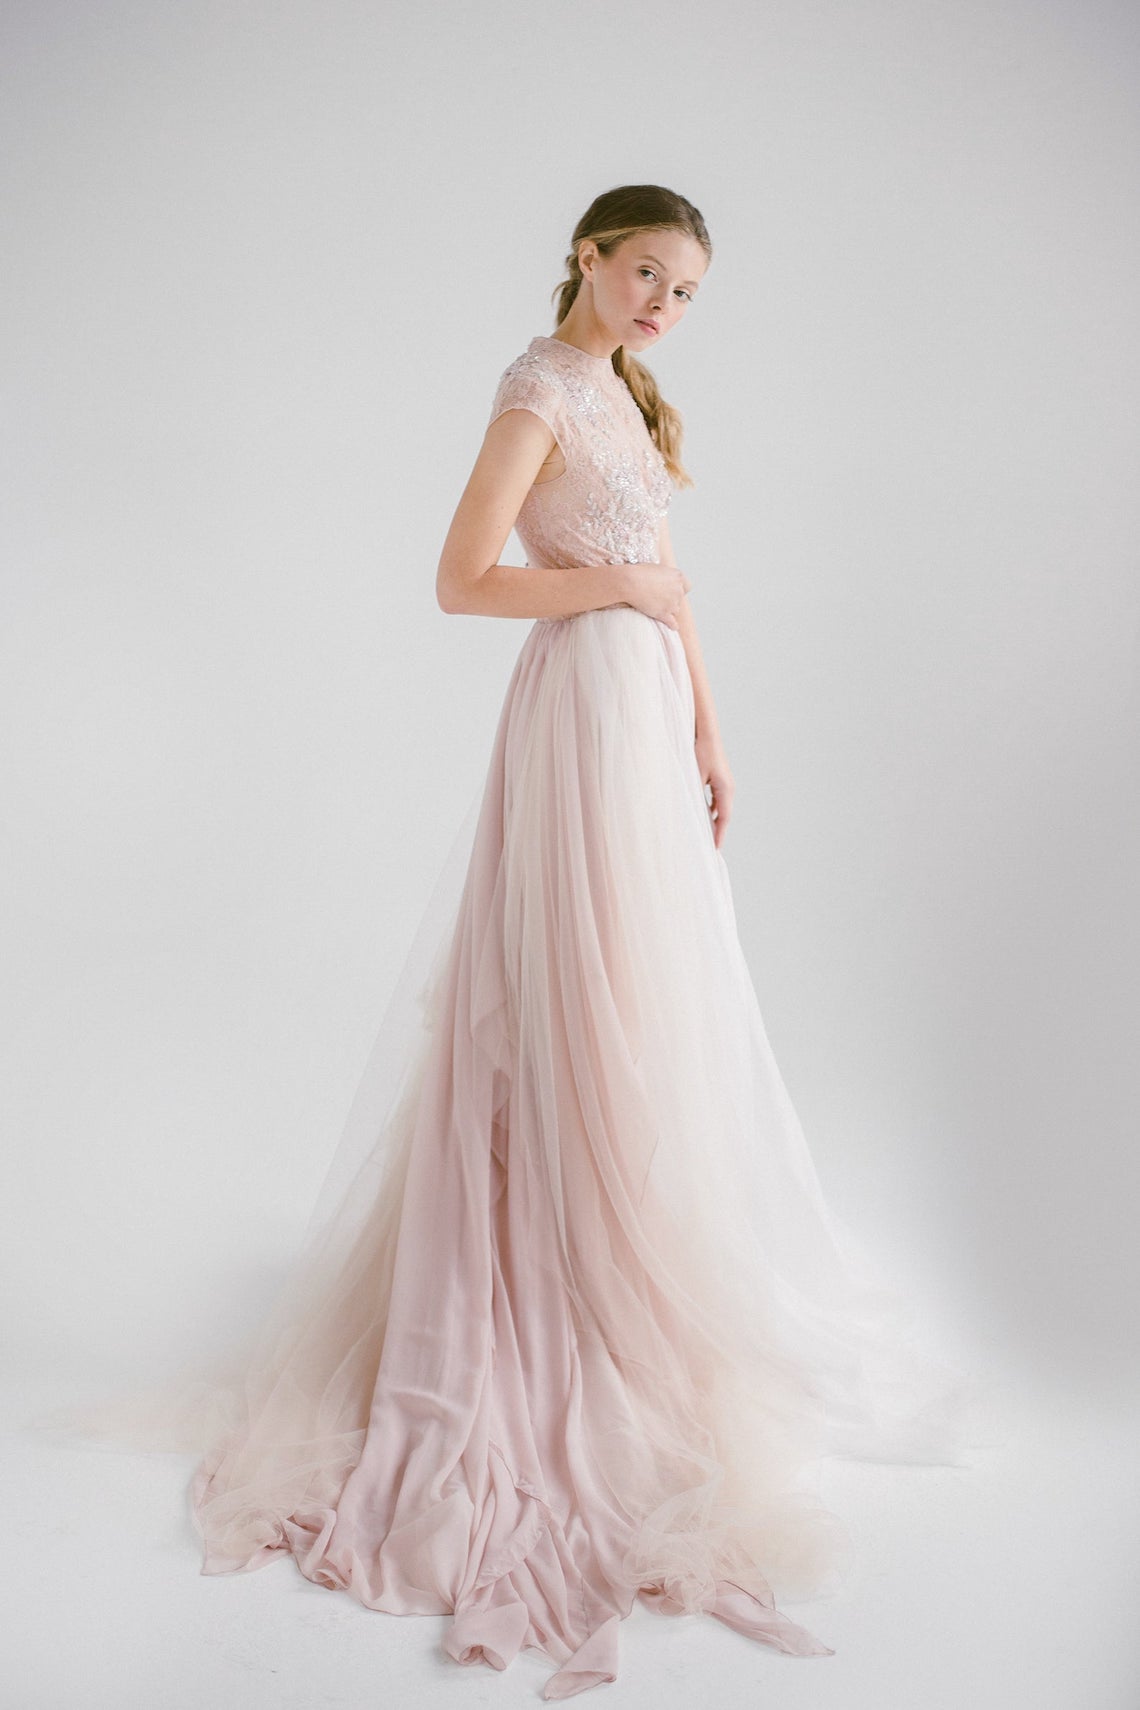 Mywony Bridal Blush Pink Wedding Dress Best Pink Wedding Dresses for 2021 2022 Brides Bridal Musings 2 - 30 chiếc áo dài cưới màu hồng dành cho cô dâu yêu thích sắc màu